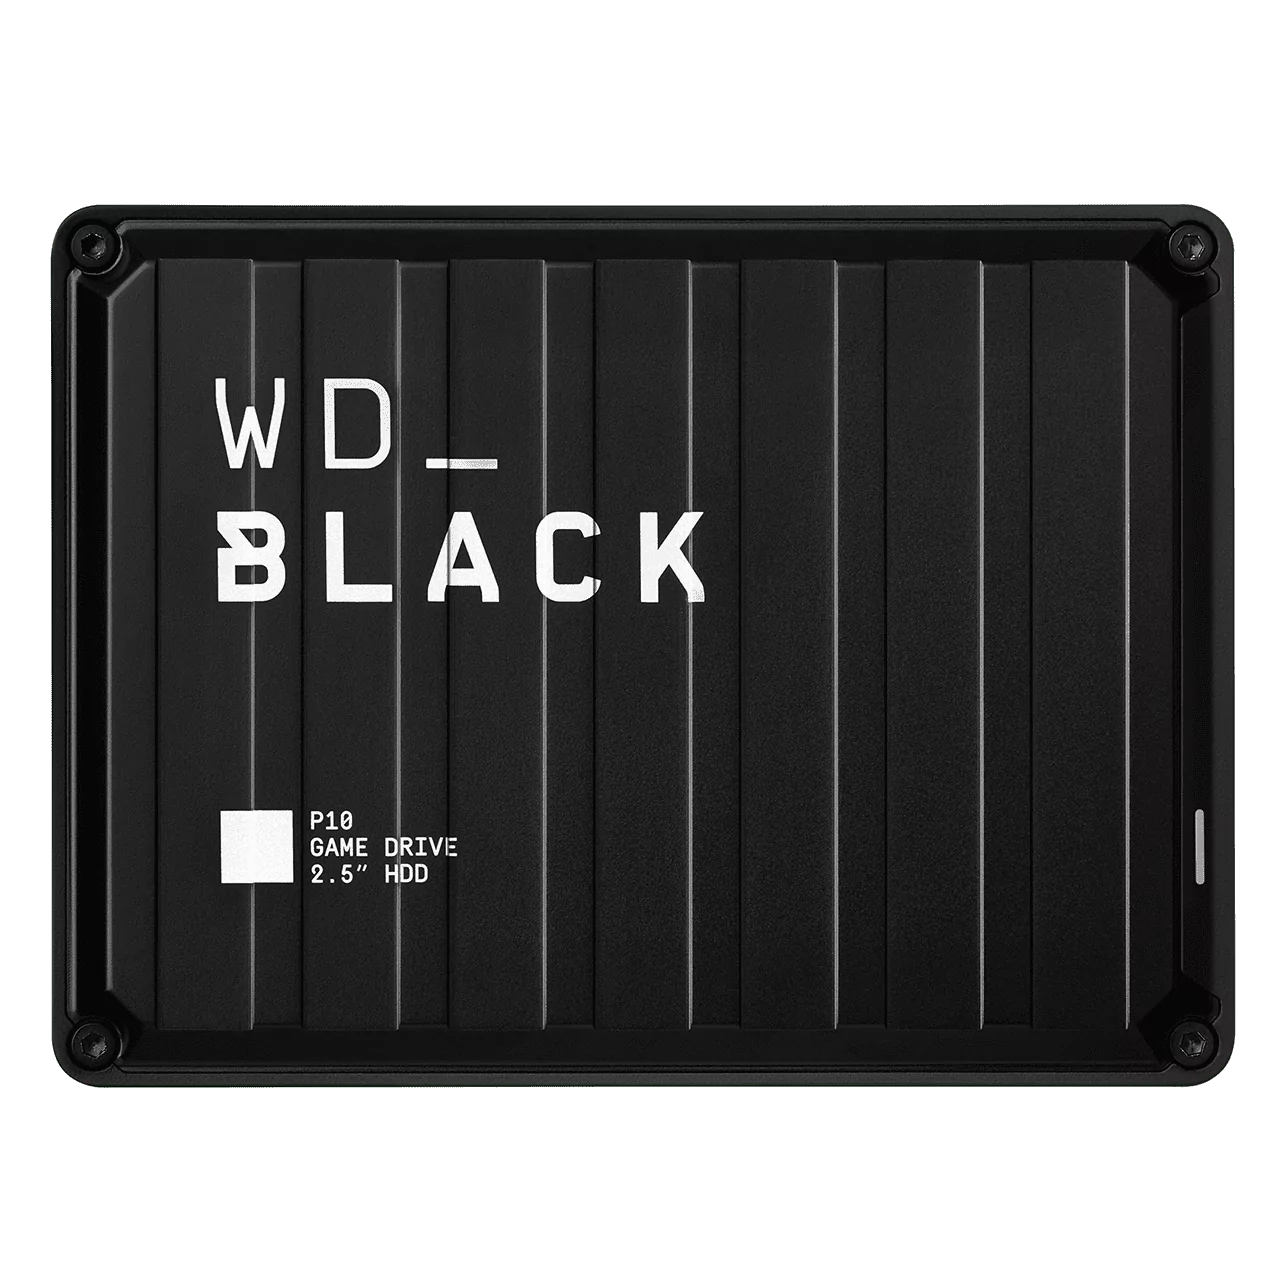 Внешний жесткий диск WD BLACK P10 Game Drive 2 ТБ для игровых косолей и ПК 13